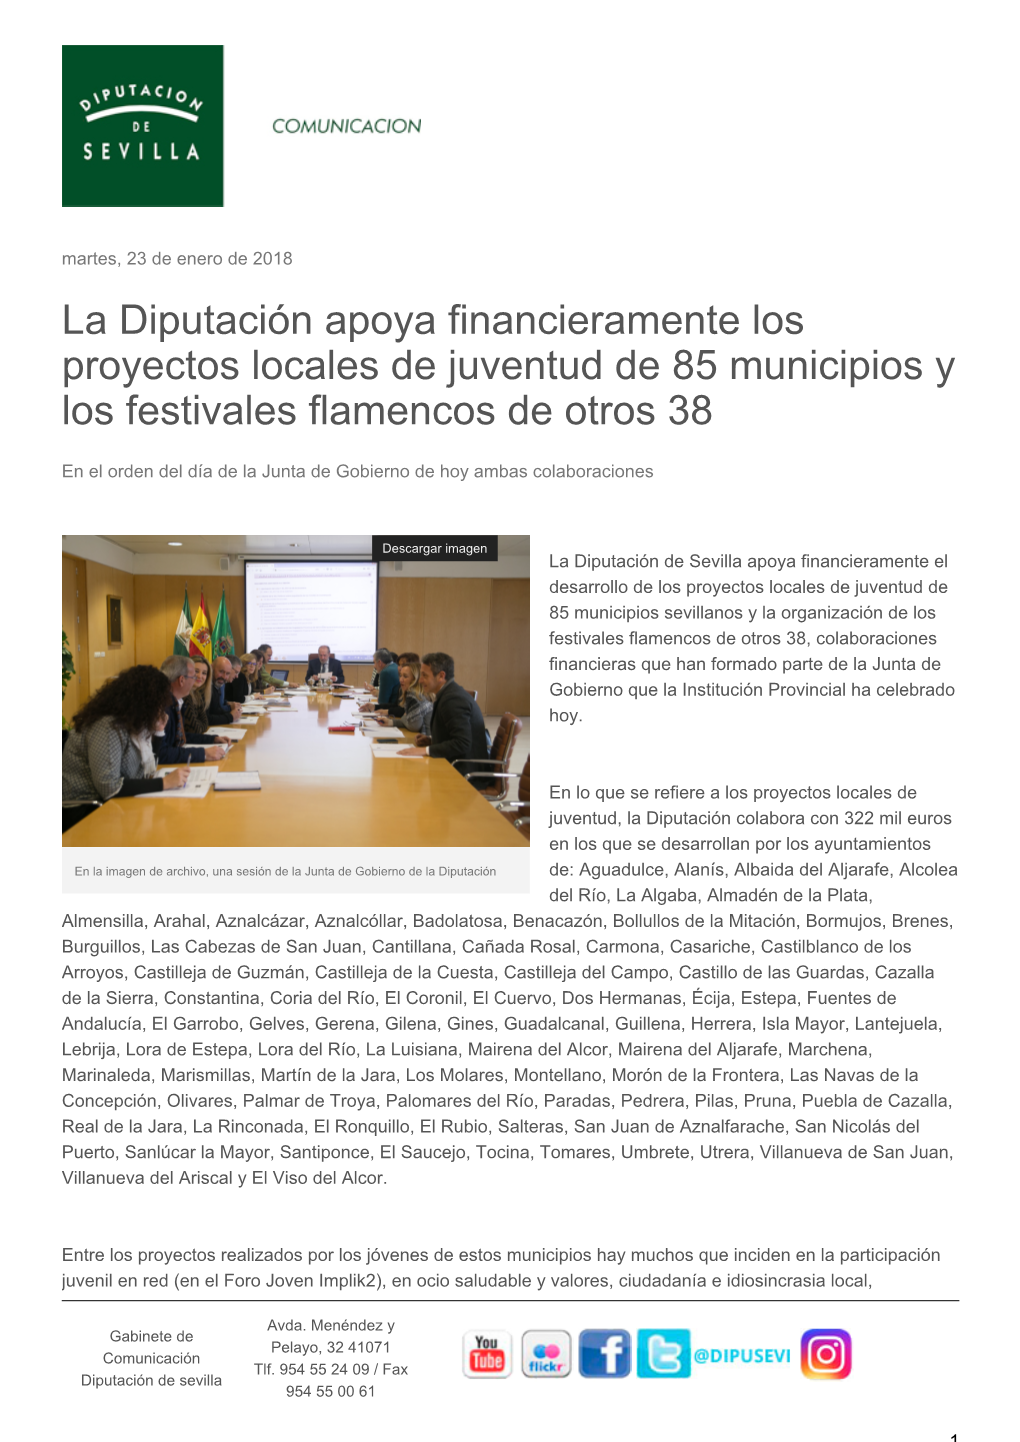 La Diputación Apoya Financieramente Los Proyectos Locales De Juventud De 85 Municipios Y Los Festivales Flamencos De Otros 38